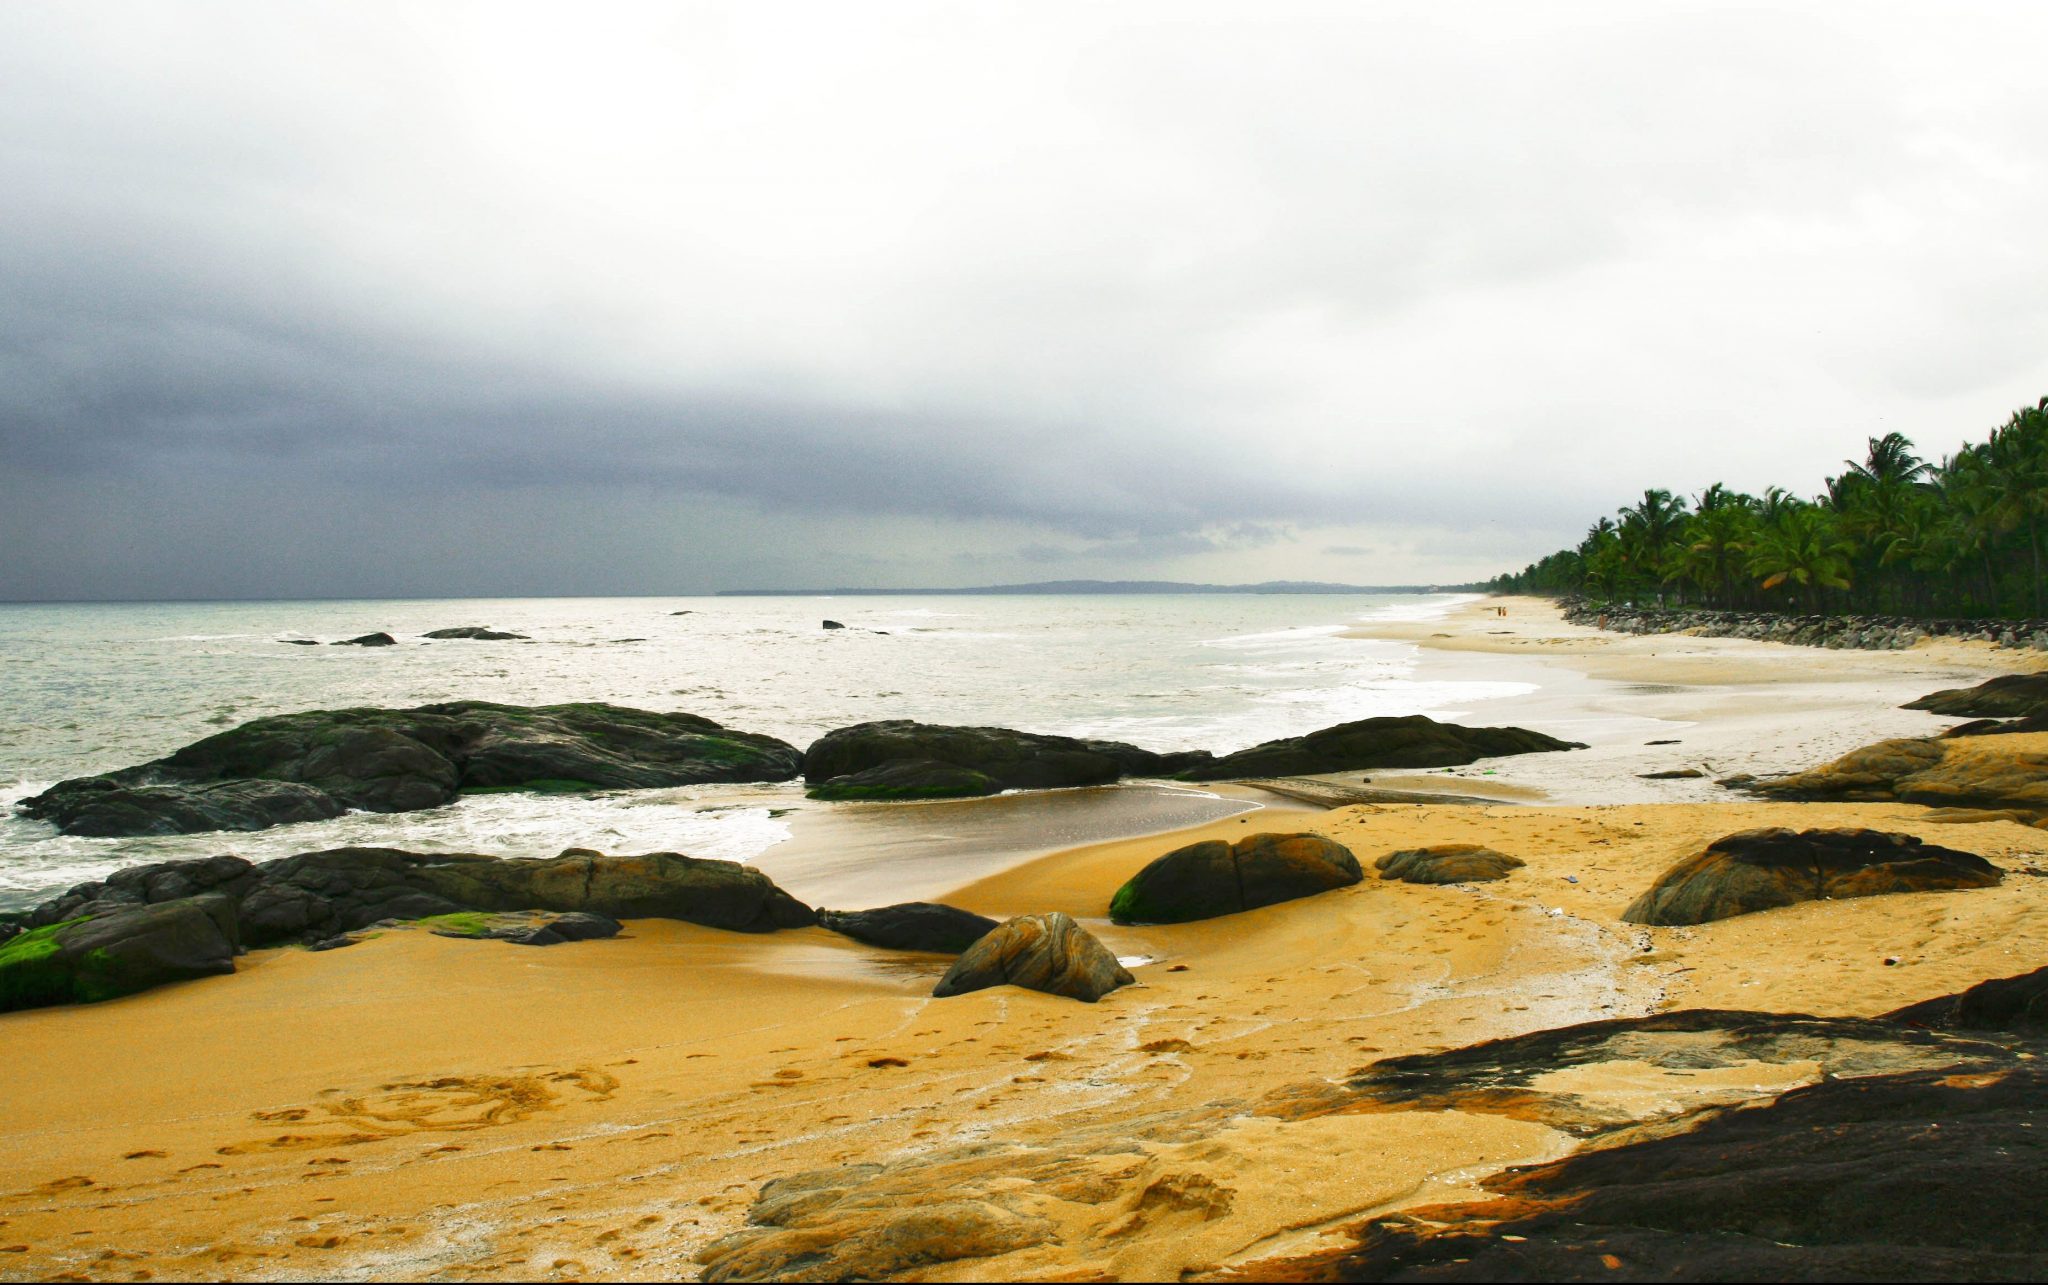 Kappad Beach, Kerala